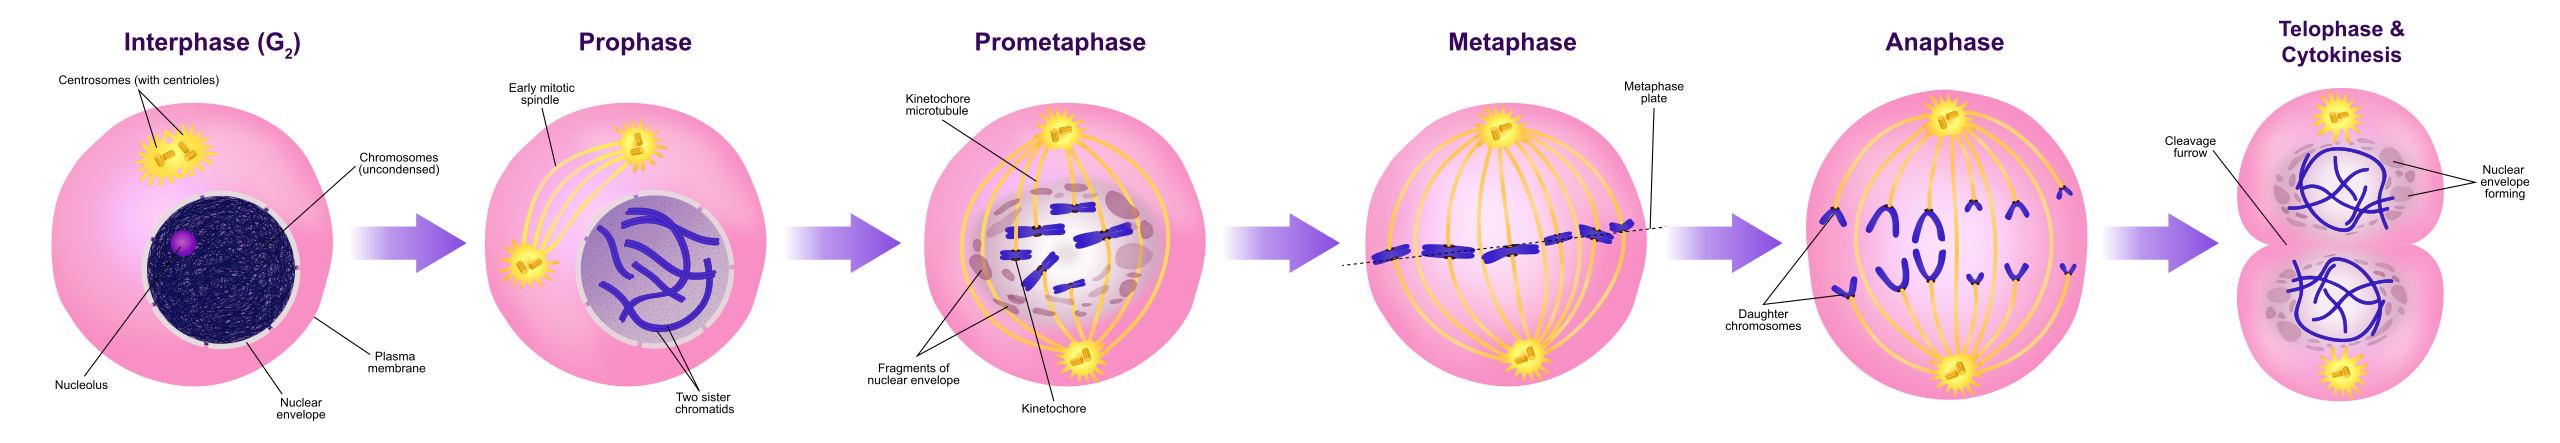 Diagrama de estadios de mitosis. La célula se ilustra durante la interfase (G2), profase, prometafase, metafase, anafase y telofase y citocinesis.